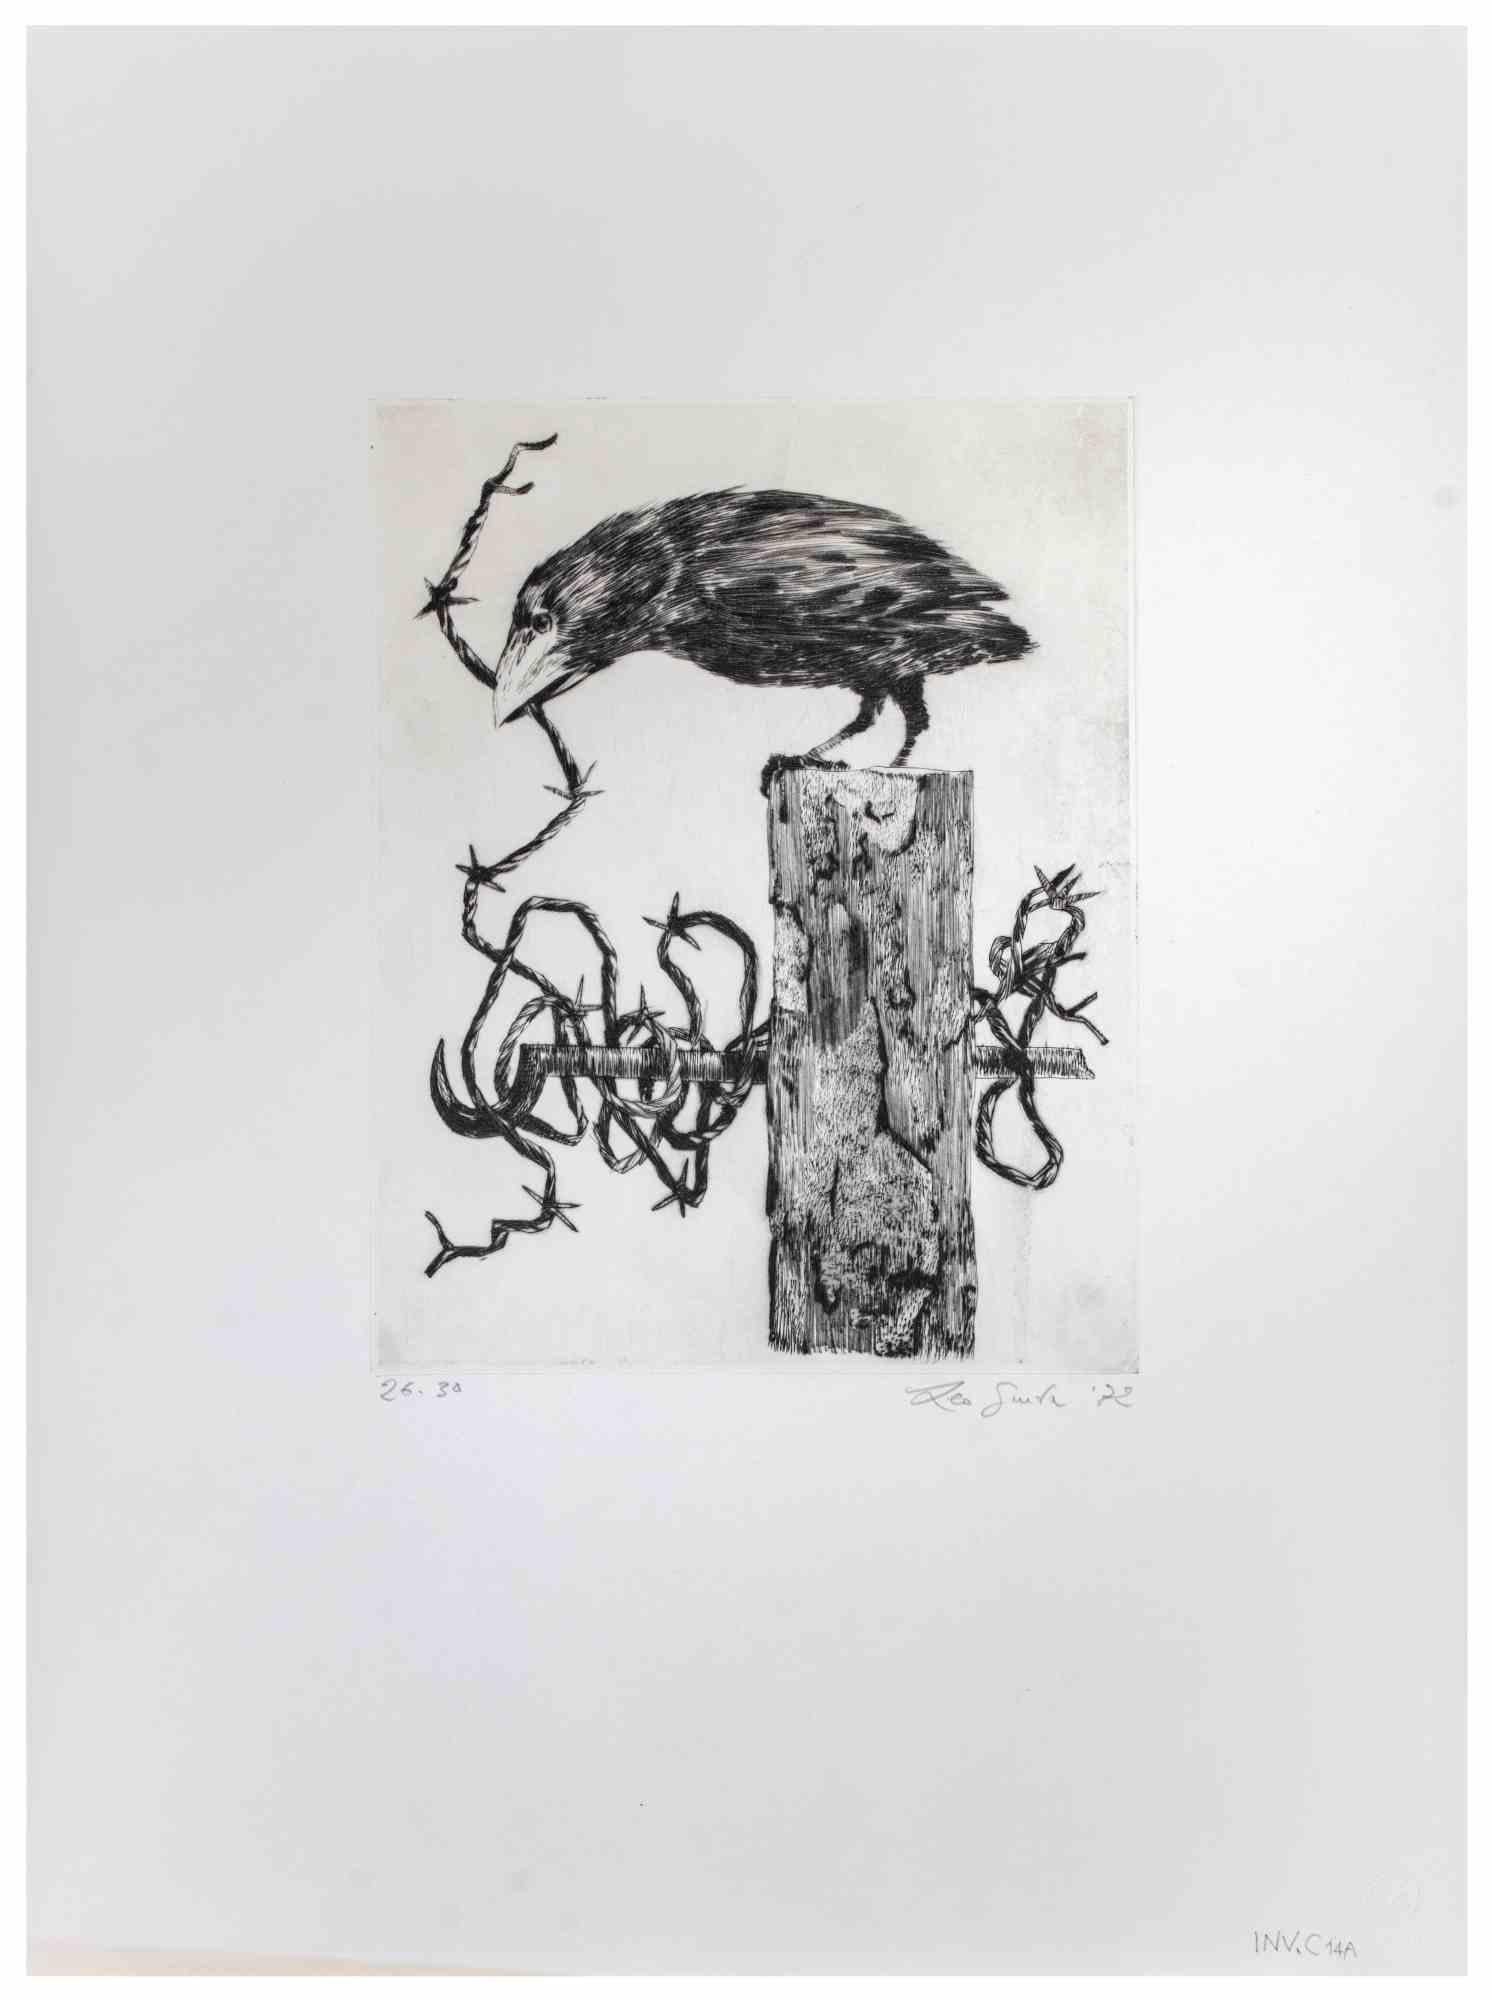 Crow ist ein Kunstwerk des zeitgenössischen italienischen Künstlers  Leo Guida (1992 - 2017) im Jahr 1972.

Schwarz-Weiß-Radierung auf Papier.

Rechts unten handschriftlich signiert, links unten datiert und nummeriert, Auflage 30 Exemplare. 

Sehr